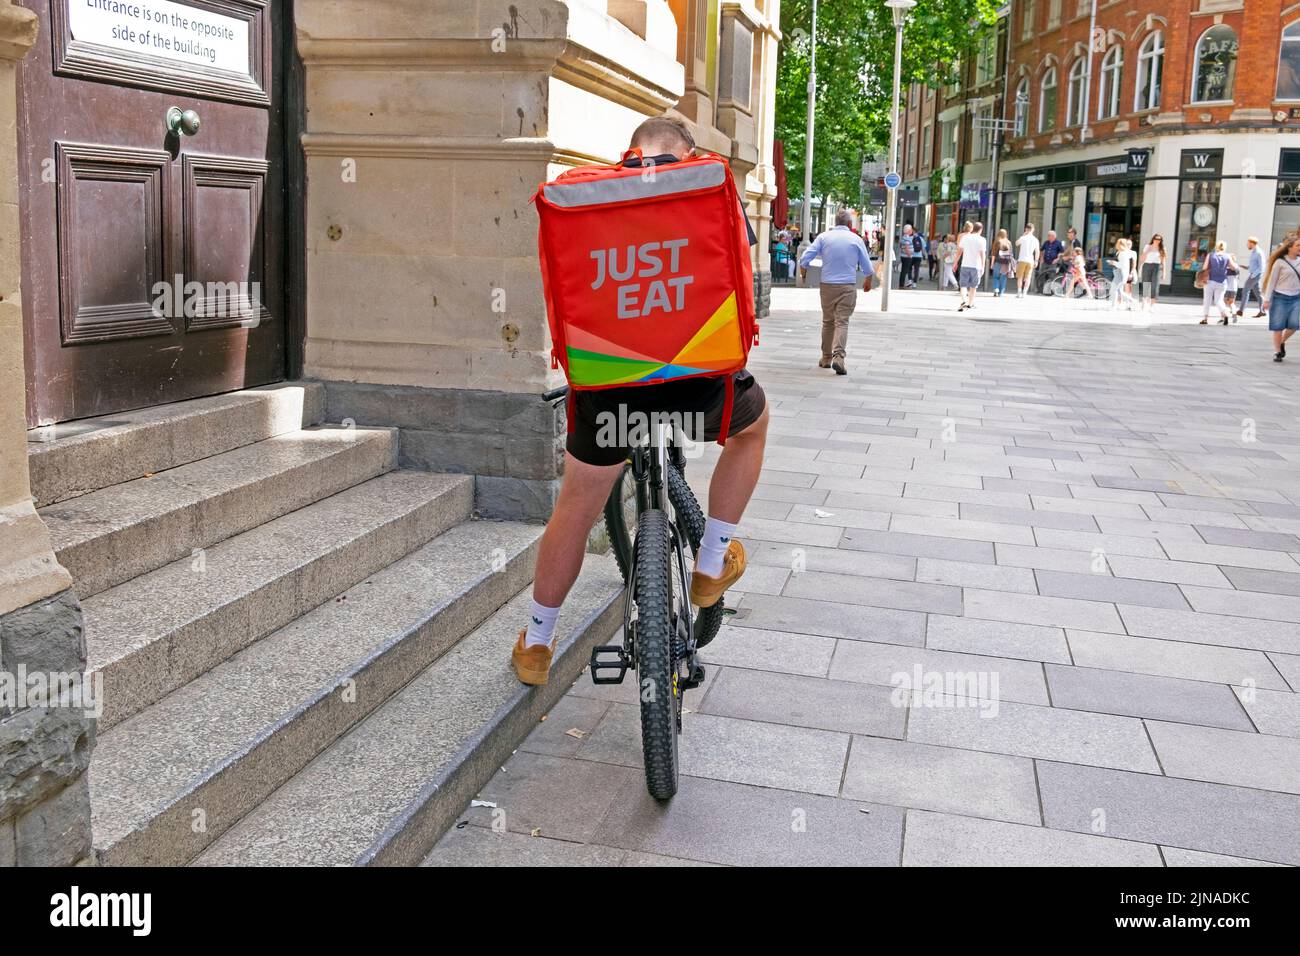 Juste manger fast food affiche logo sur le dos du sac à dos sur cycliste homme livraison de vélo dans la rue Cardiff pays de Galles Royaume-Uni KATHY DEWITT Banque D'Images